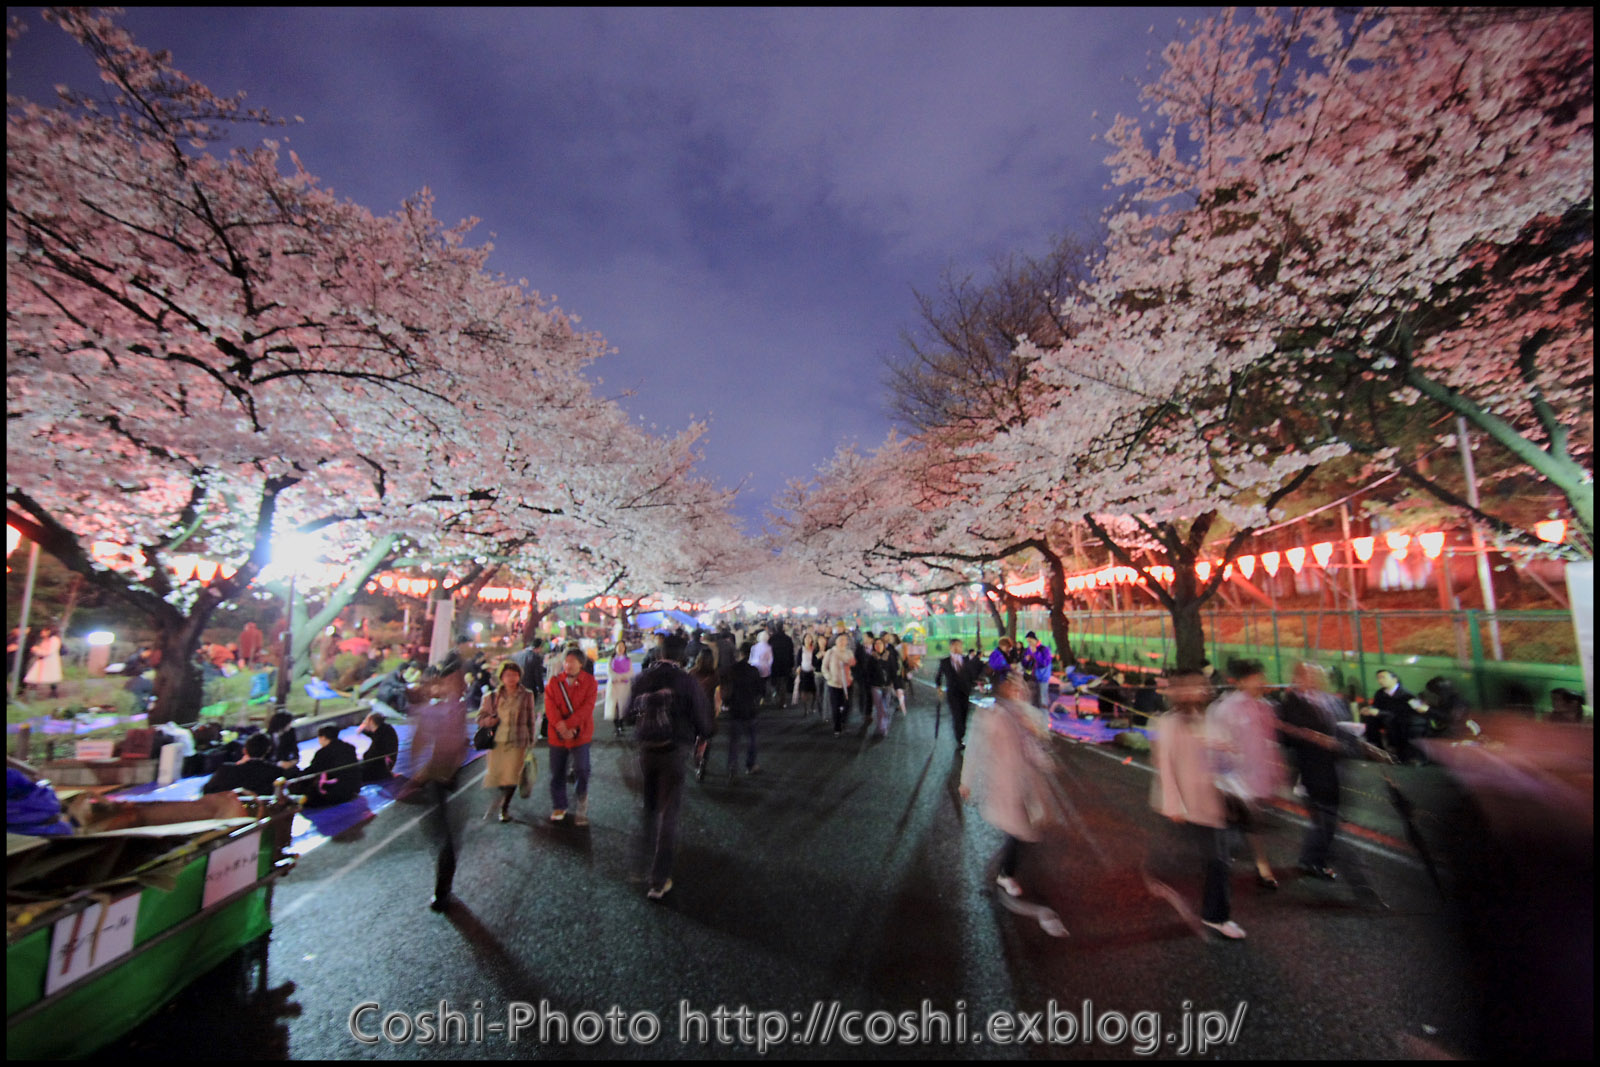 上野公園の夜桜・・・前編_a0110096_1692963.jpg